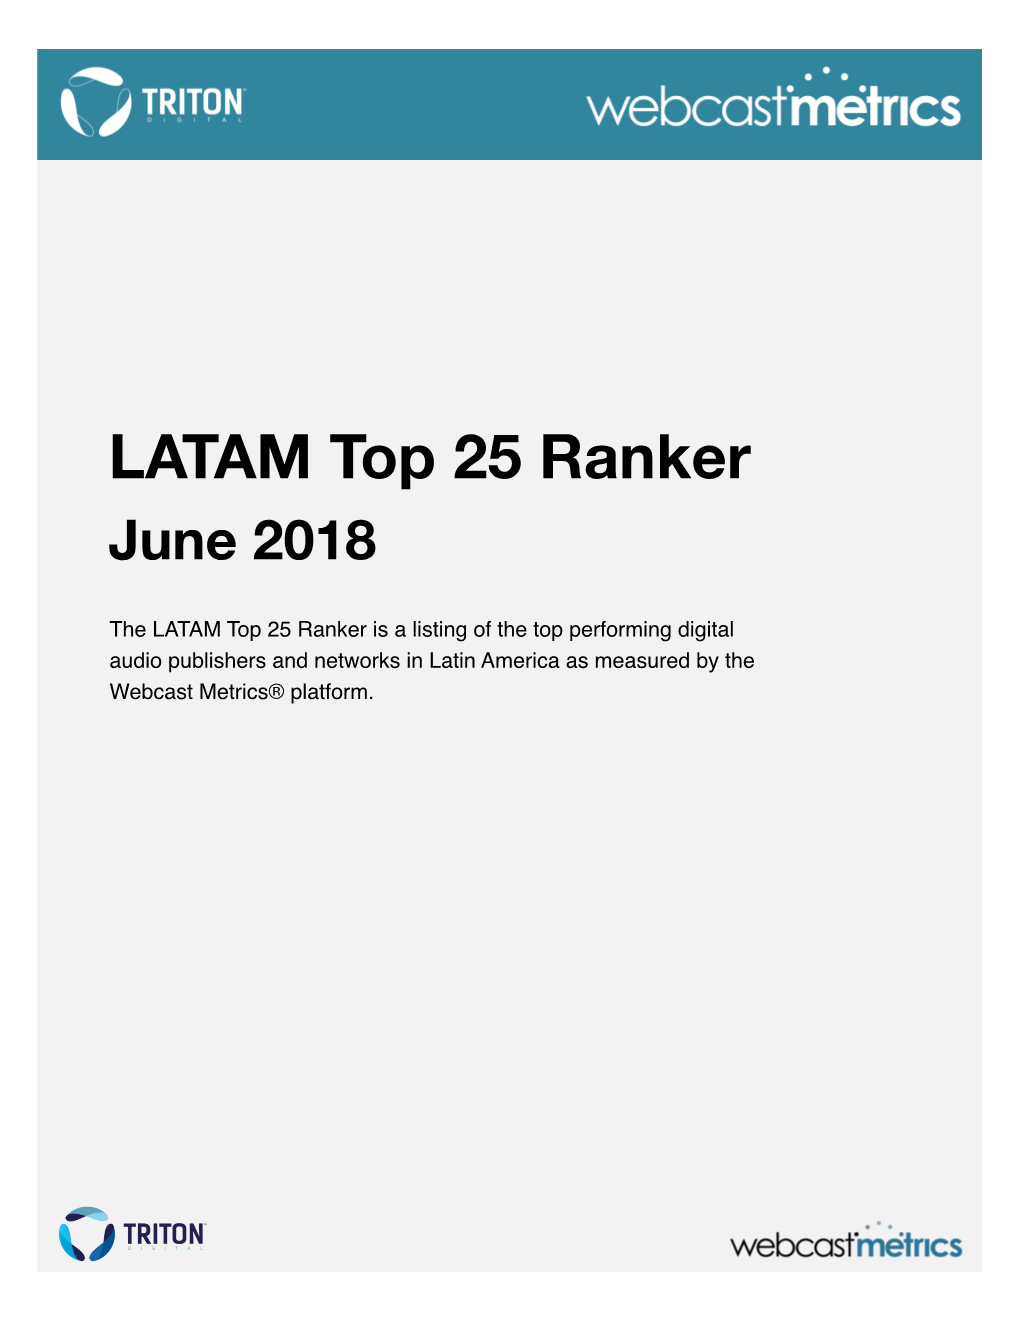 LATAM Top 25 Ranker June 2018